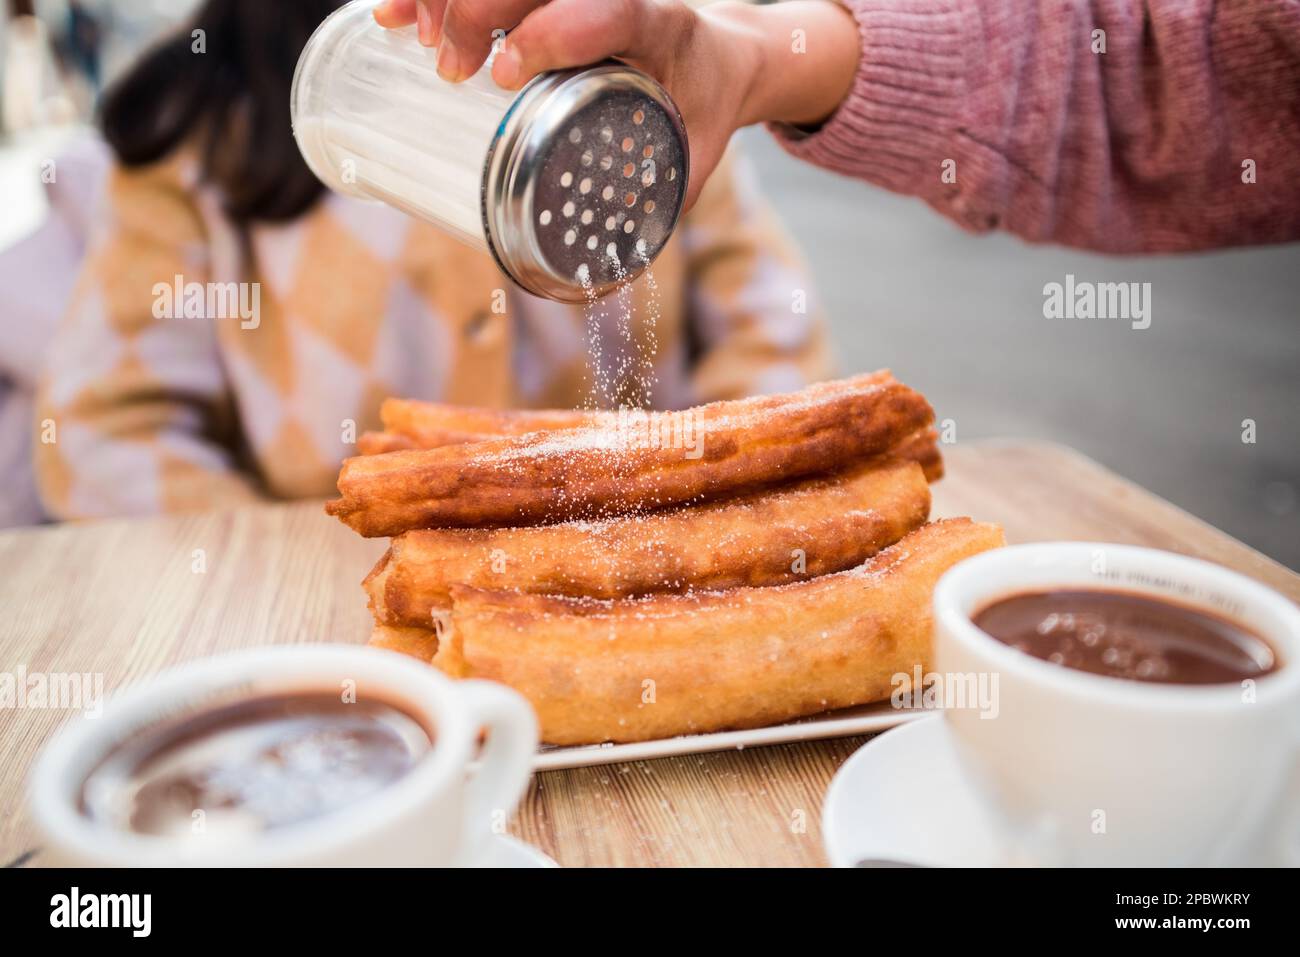 La main de femme verse du sucre sur les churros servis sur la table du bar. Banque D'Images